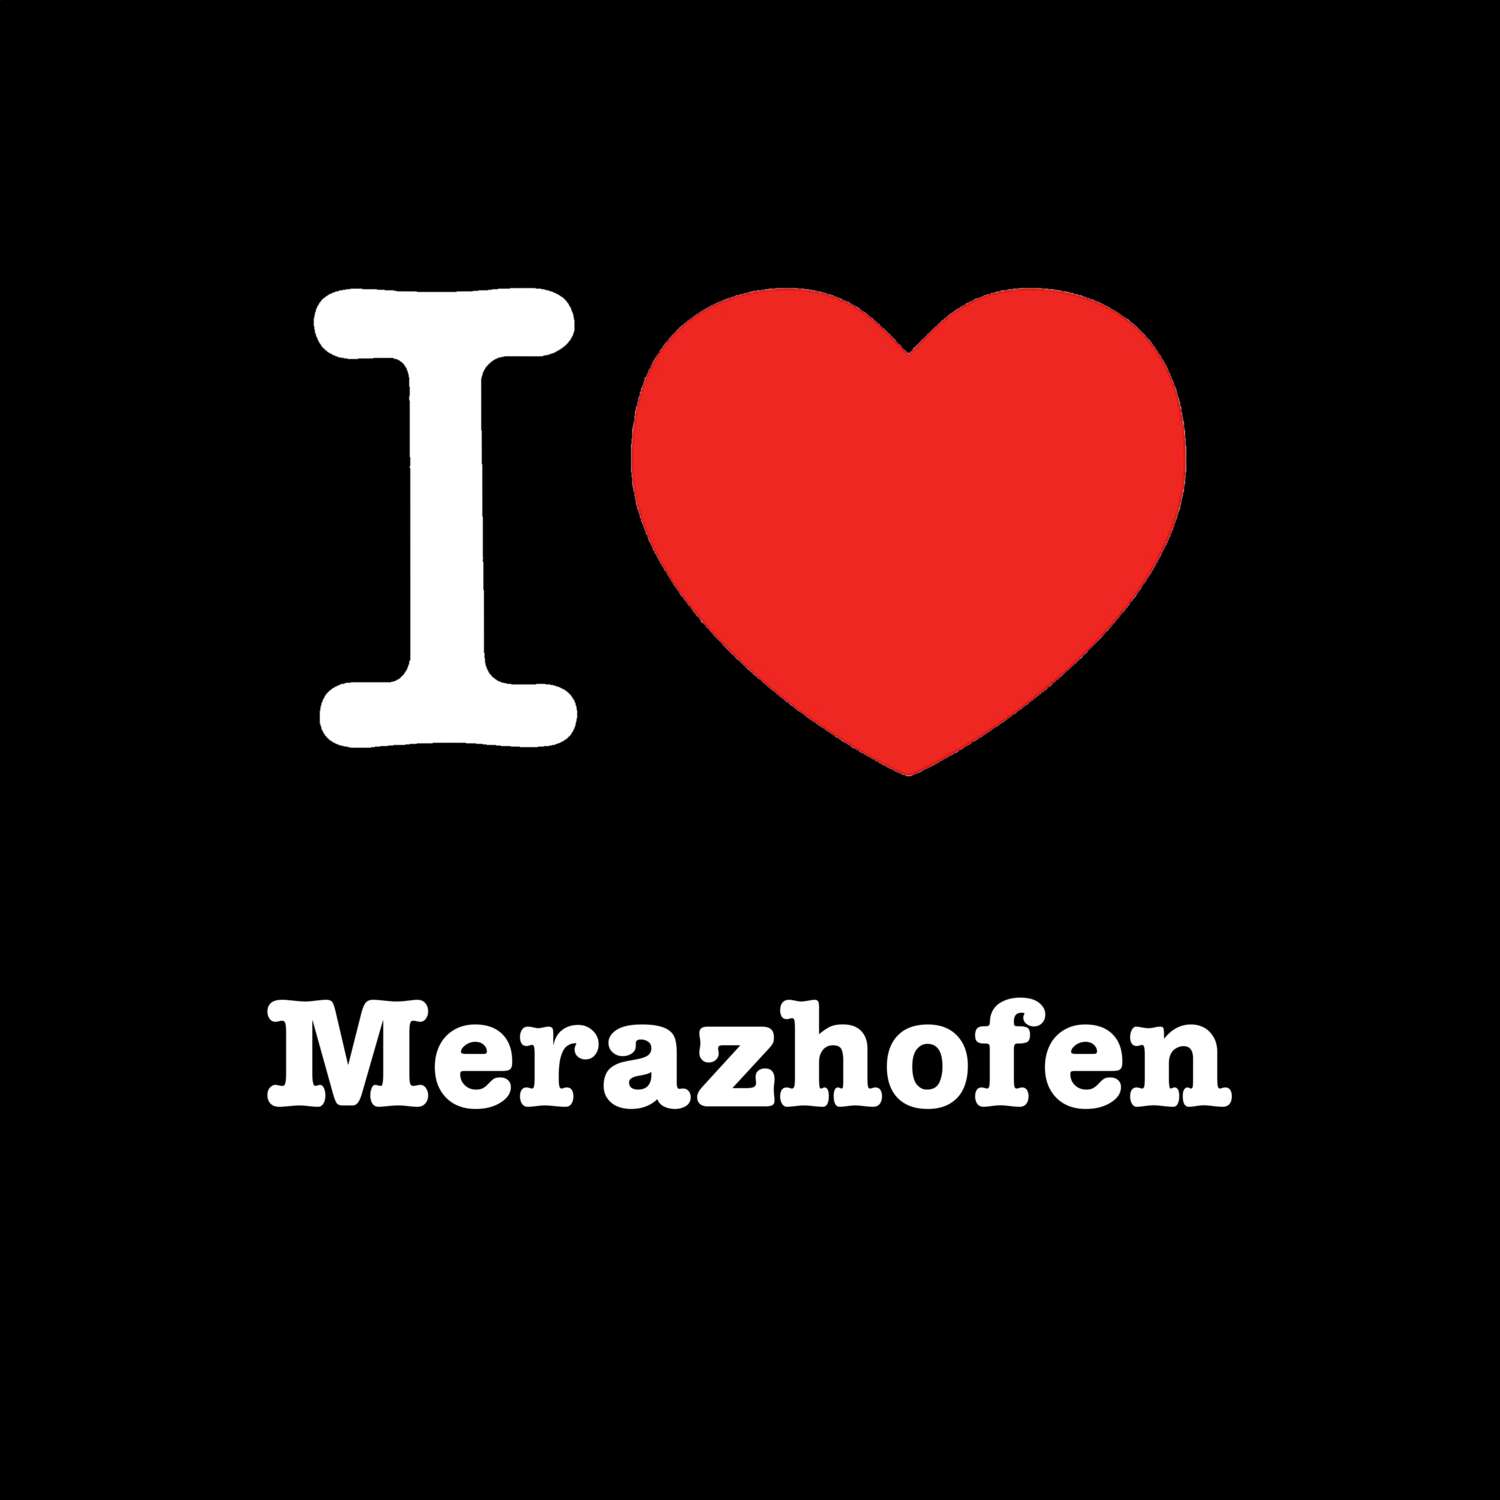 Merazhofen T-Shirt »I love«